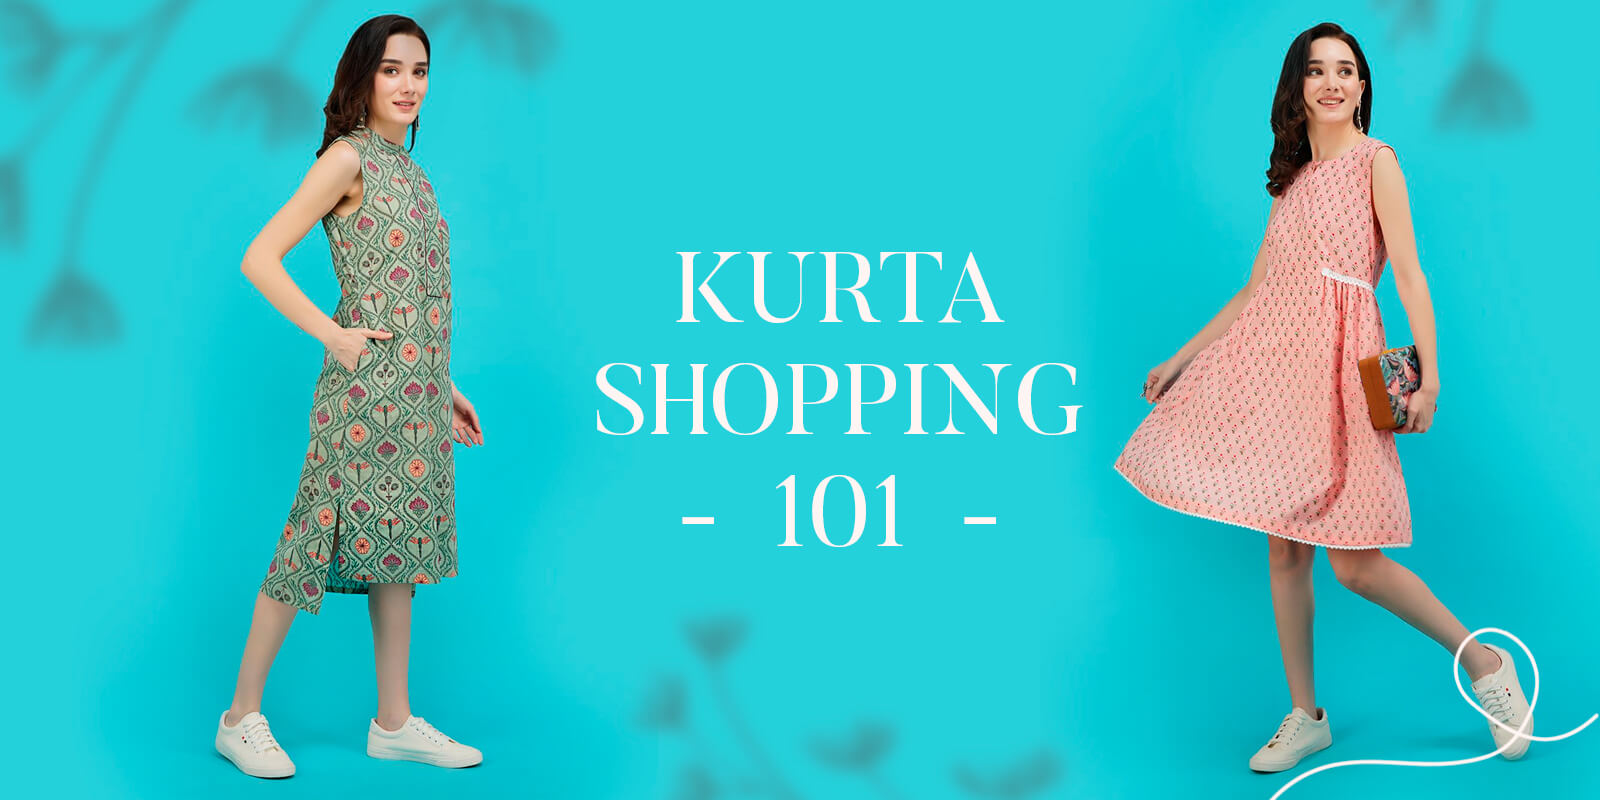 Kurta shopping 101